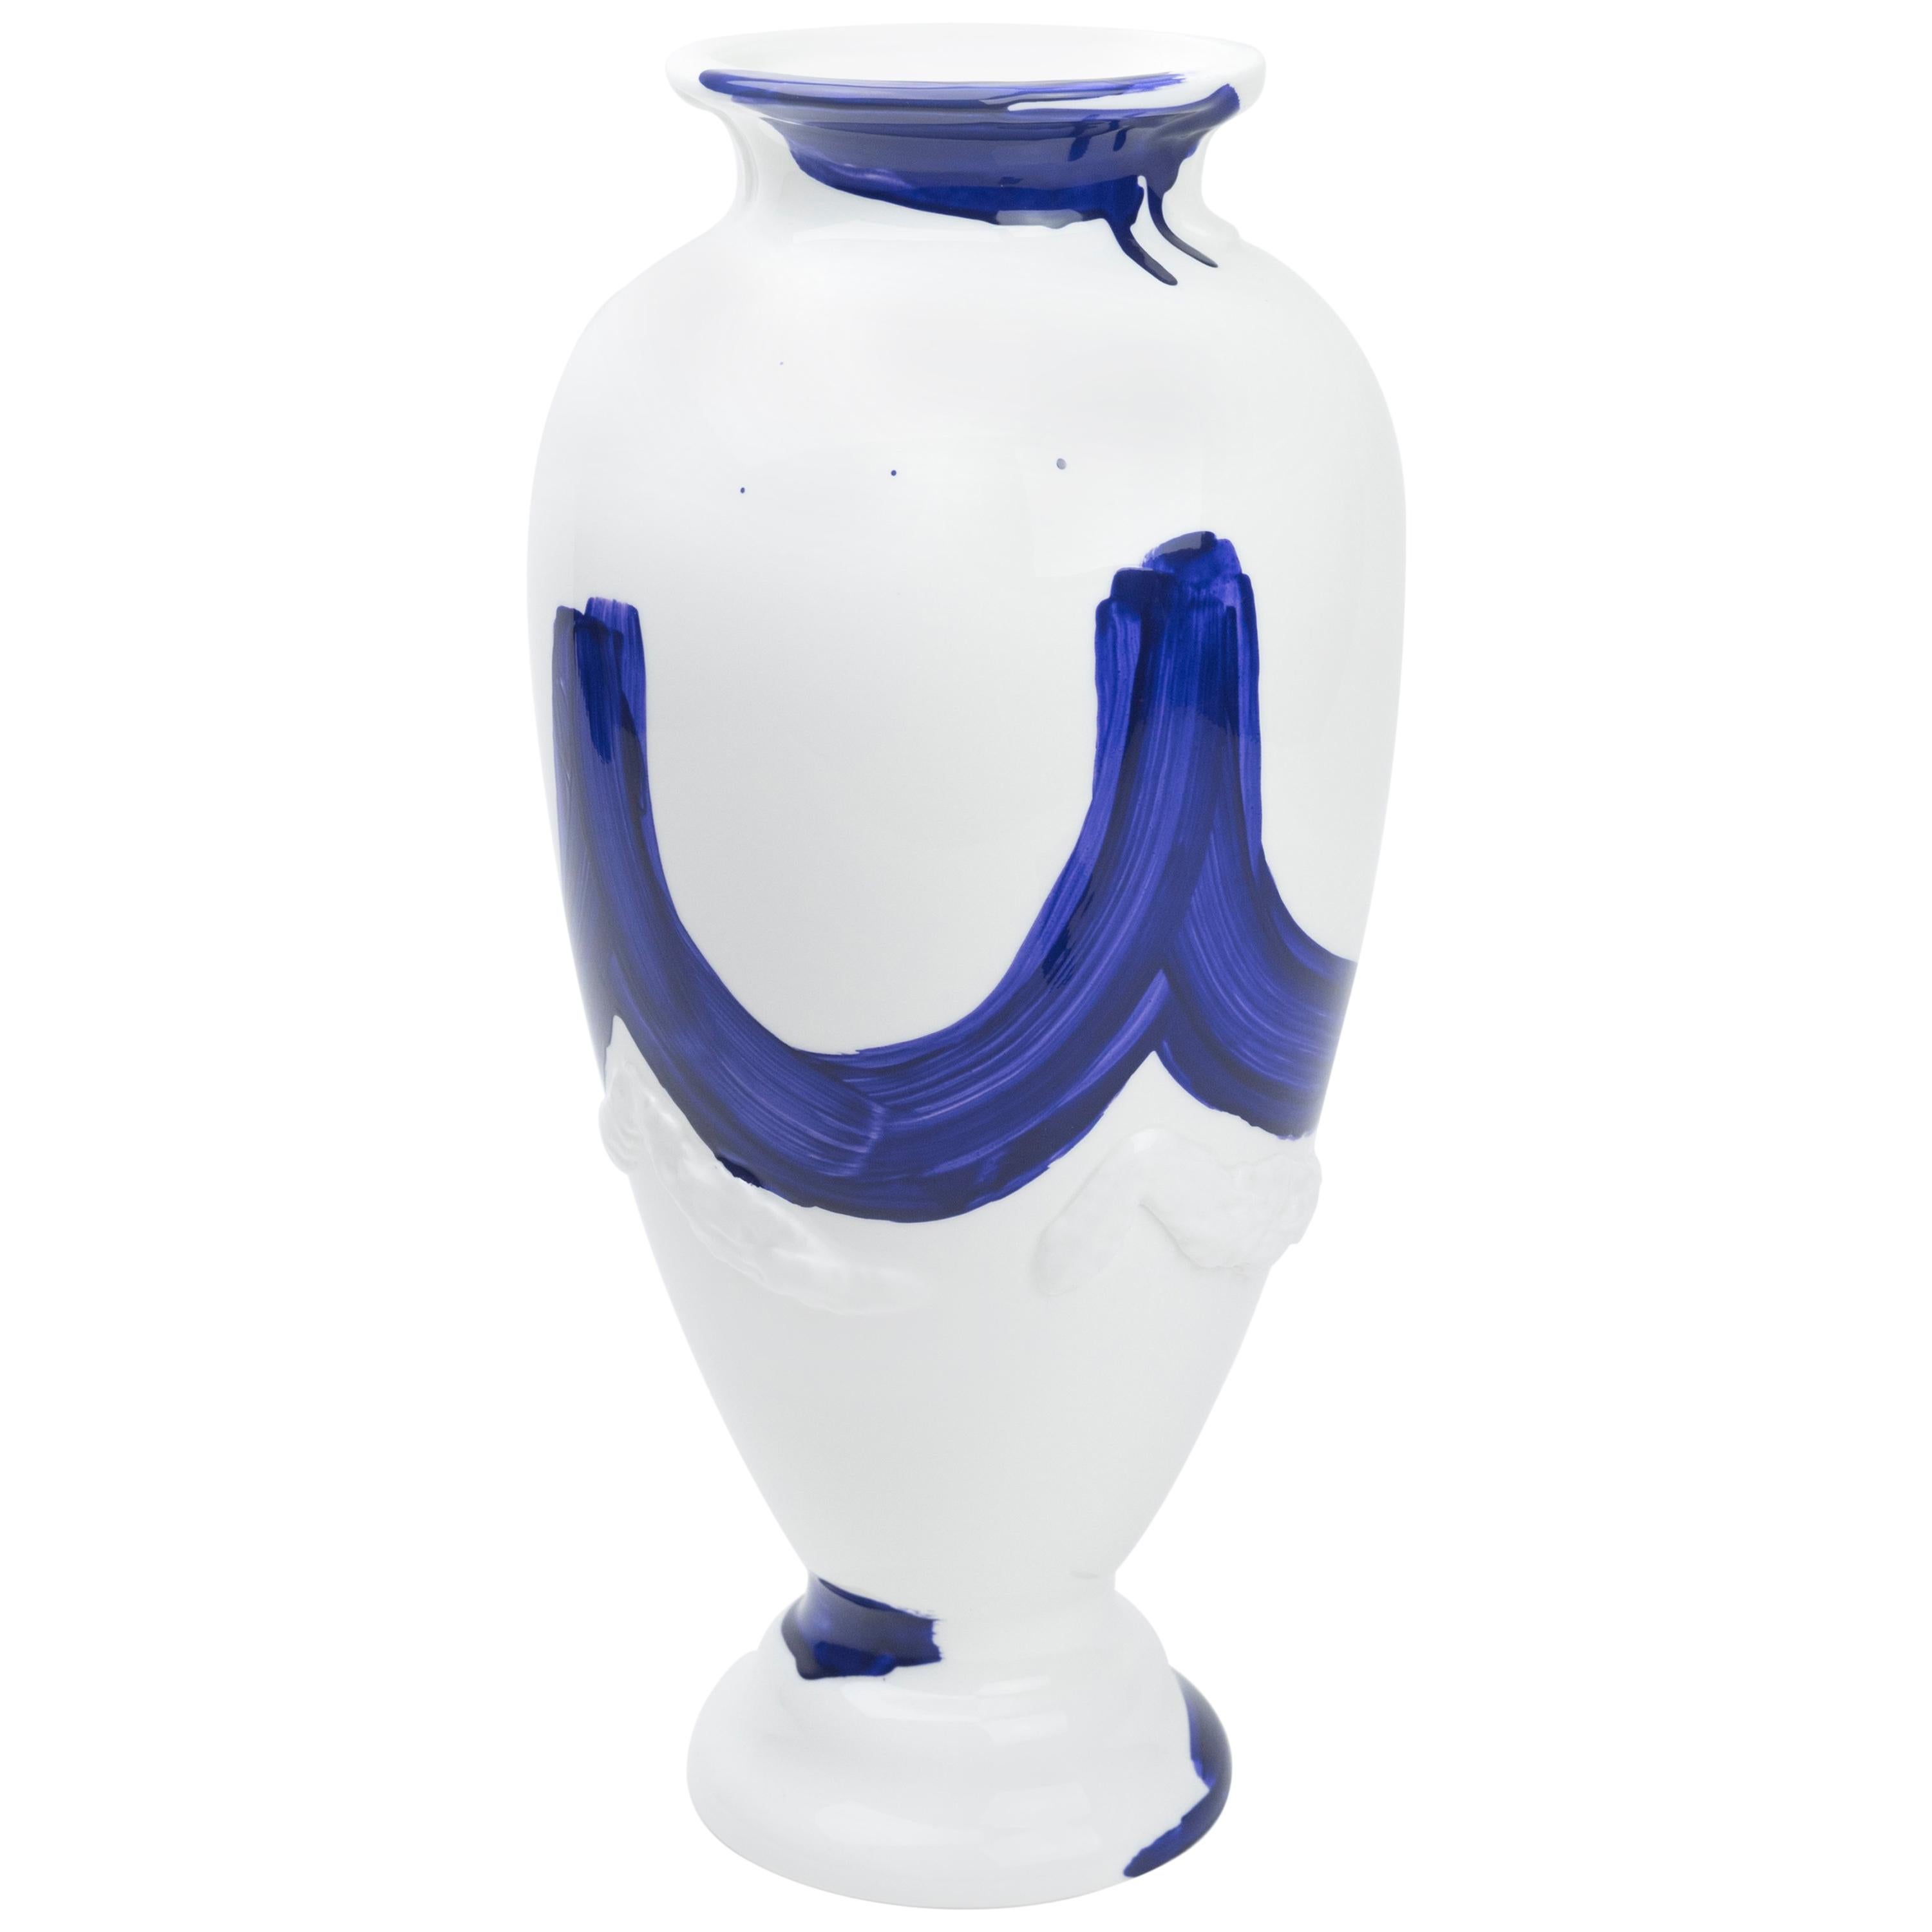 Contemporary Tryst Keramikvase mit handgemalten Motiven in Blau und Weiß